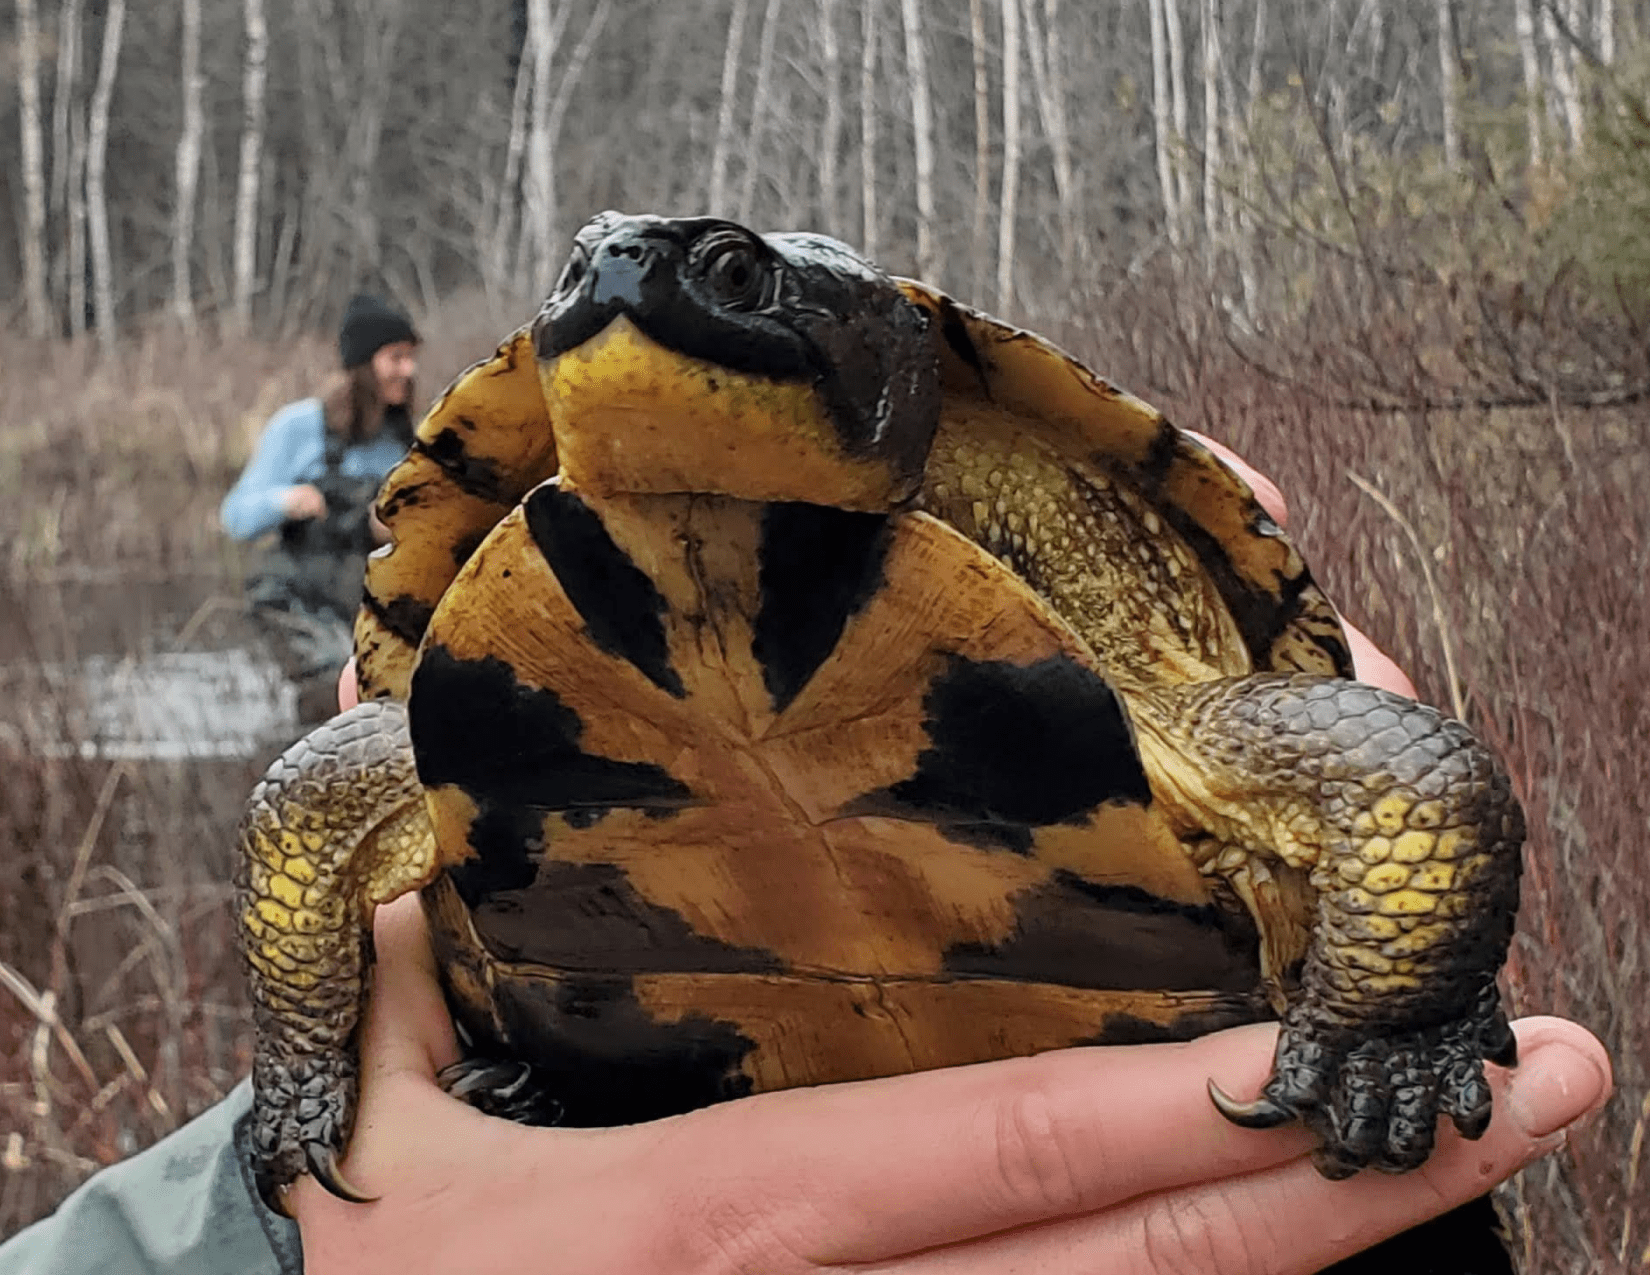 Blandings turtle being held up 